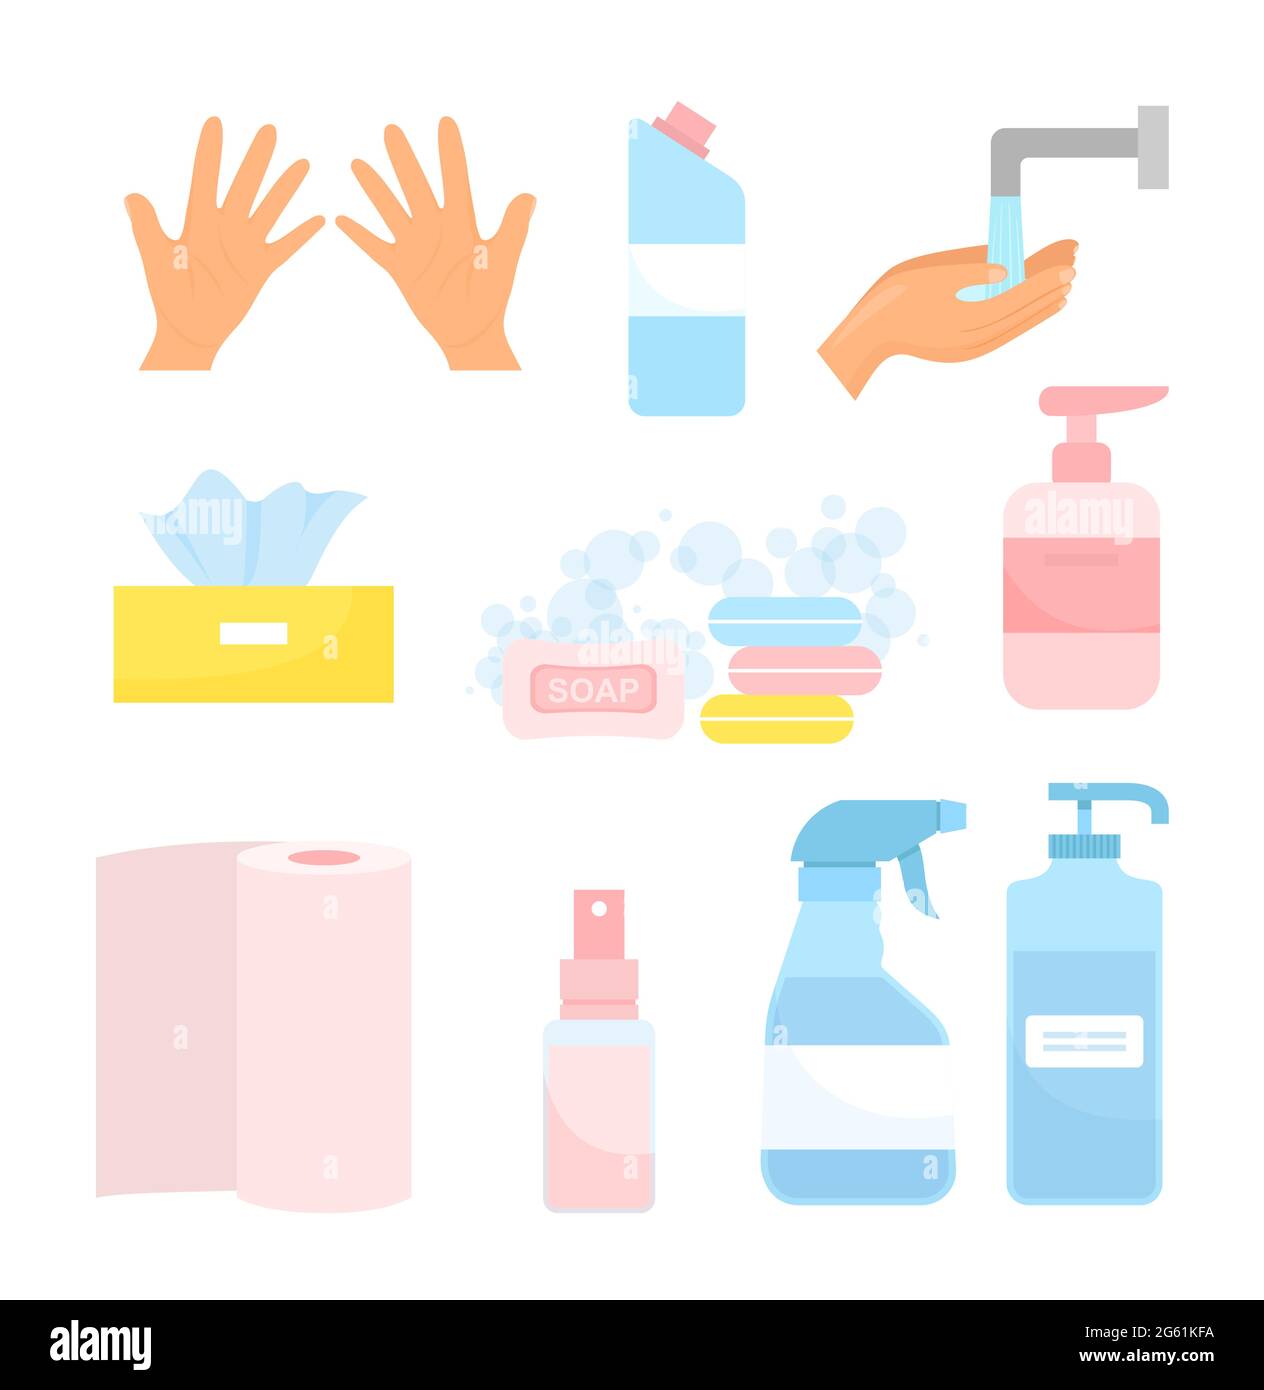 Laver les mains illustration vectorielle, dessin animé plat icône d'hygiène ensemble avec savon nettoyant, pulvérisateur de désinfectant dans le flacon, désinfecter le gel de nettoyage isolé sur blanc Illustration de Vecteur